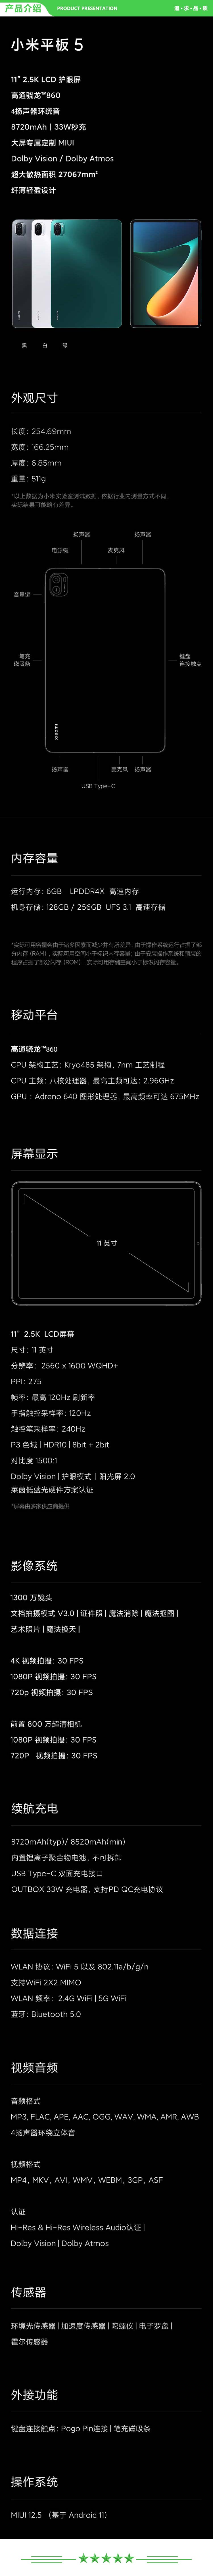 小米 xiaomi 平板5 平板电脑（11英寸2.5K高清 120Hz 骁龙860 6G+256GB 33W快充 杜比影音娱乐办公 白色）+ 键盘套装.jpg